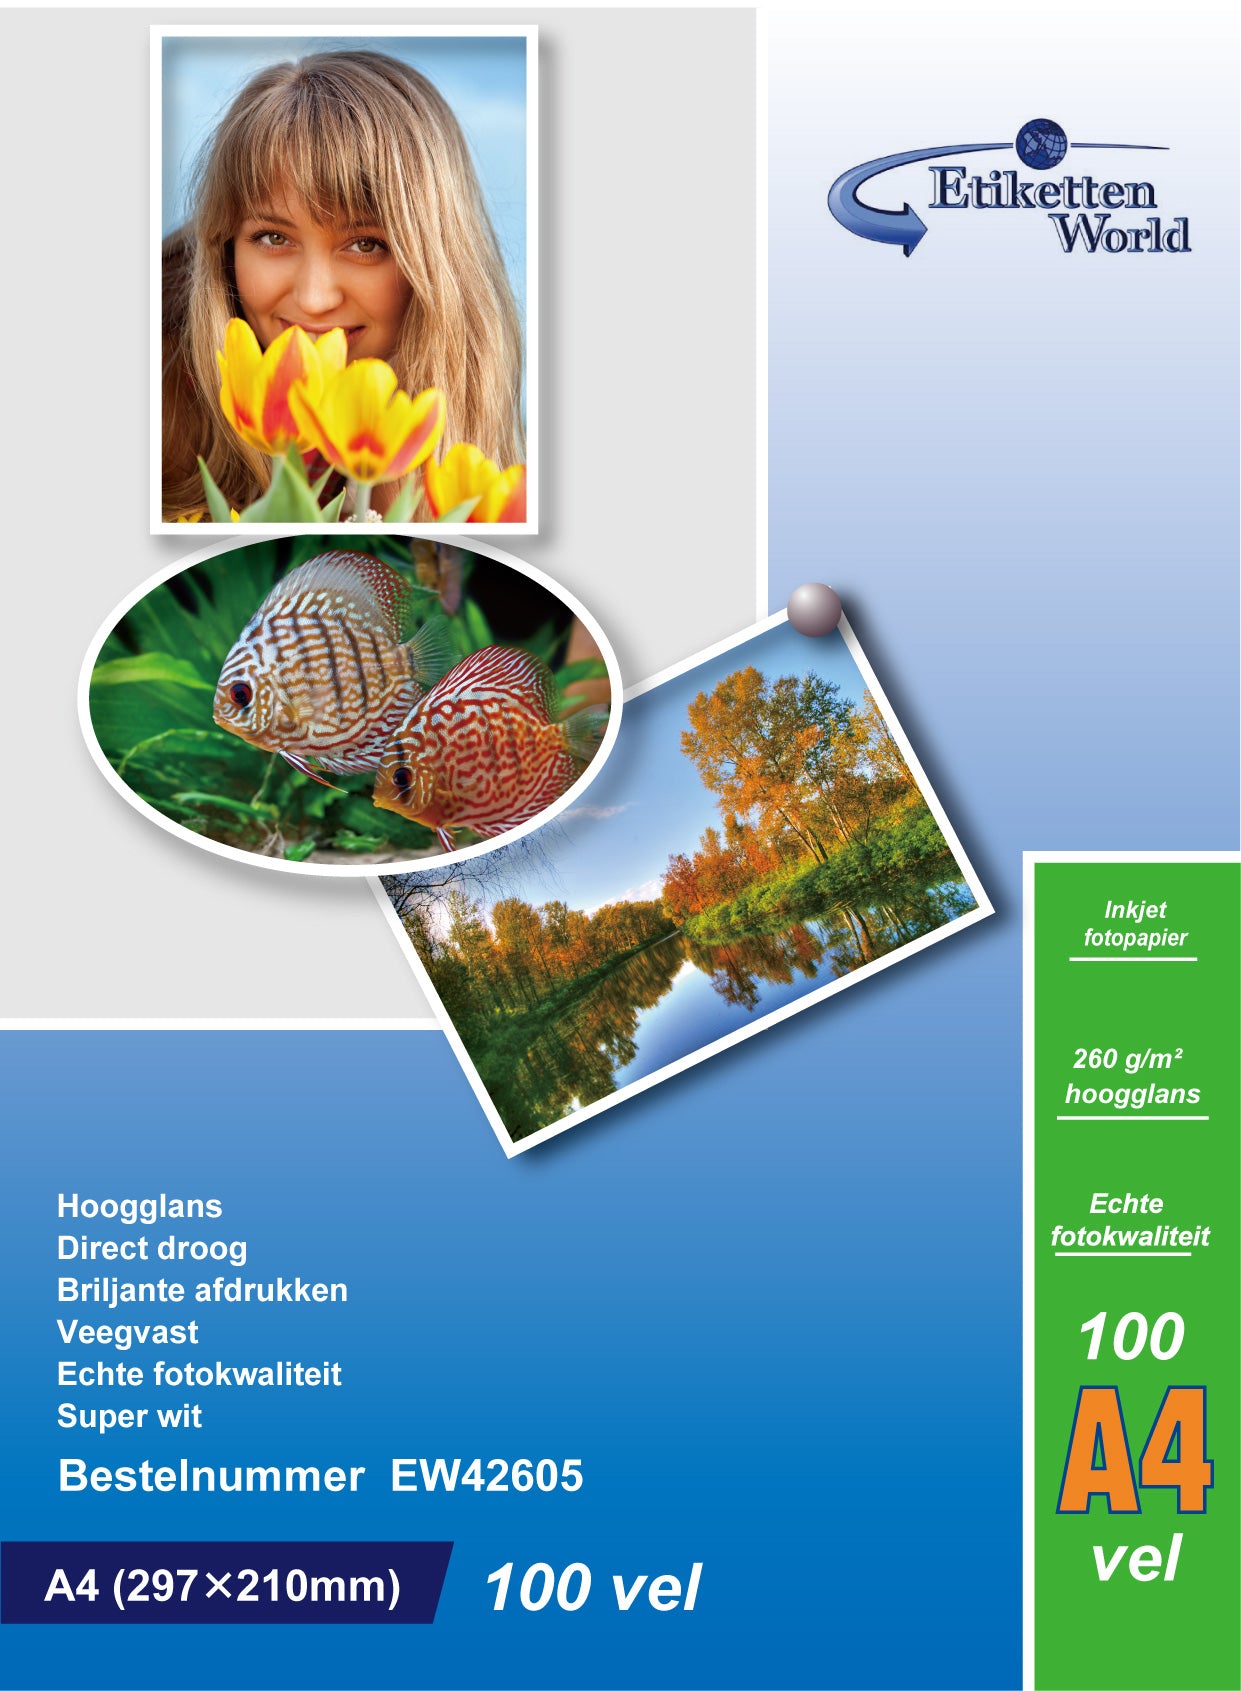 100 Blatt EtikettenWorld BV Fotopapier/ Fotokarten A4 260g/qm High Glossy und wasserfest